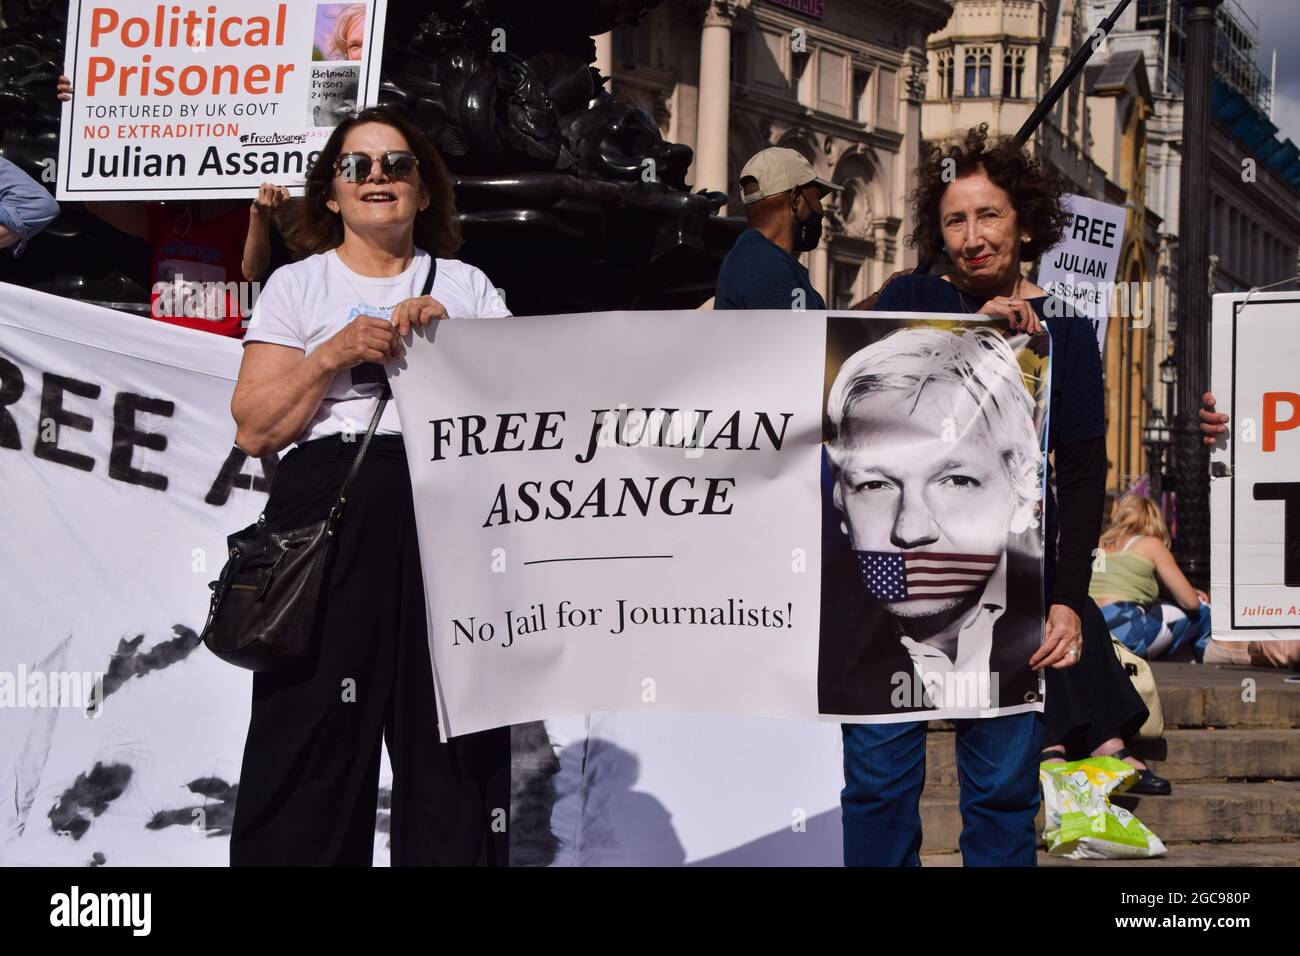 Londres, Royaume-Uni. 7 août 2021. Manifestation libre de Julian Assange à Piccadilly Circus. Les manifestants se sont rassemblés une fois de plus dans le cadre des manifestations en cours exigeant la libération du fondateur de WikiLeaks. (Crédit : Vuk Valcic / Alamy Live News) Banque D'Images